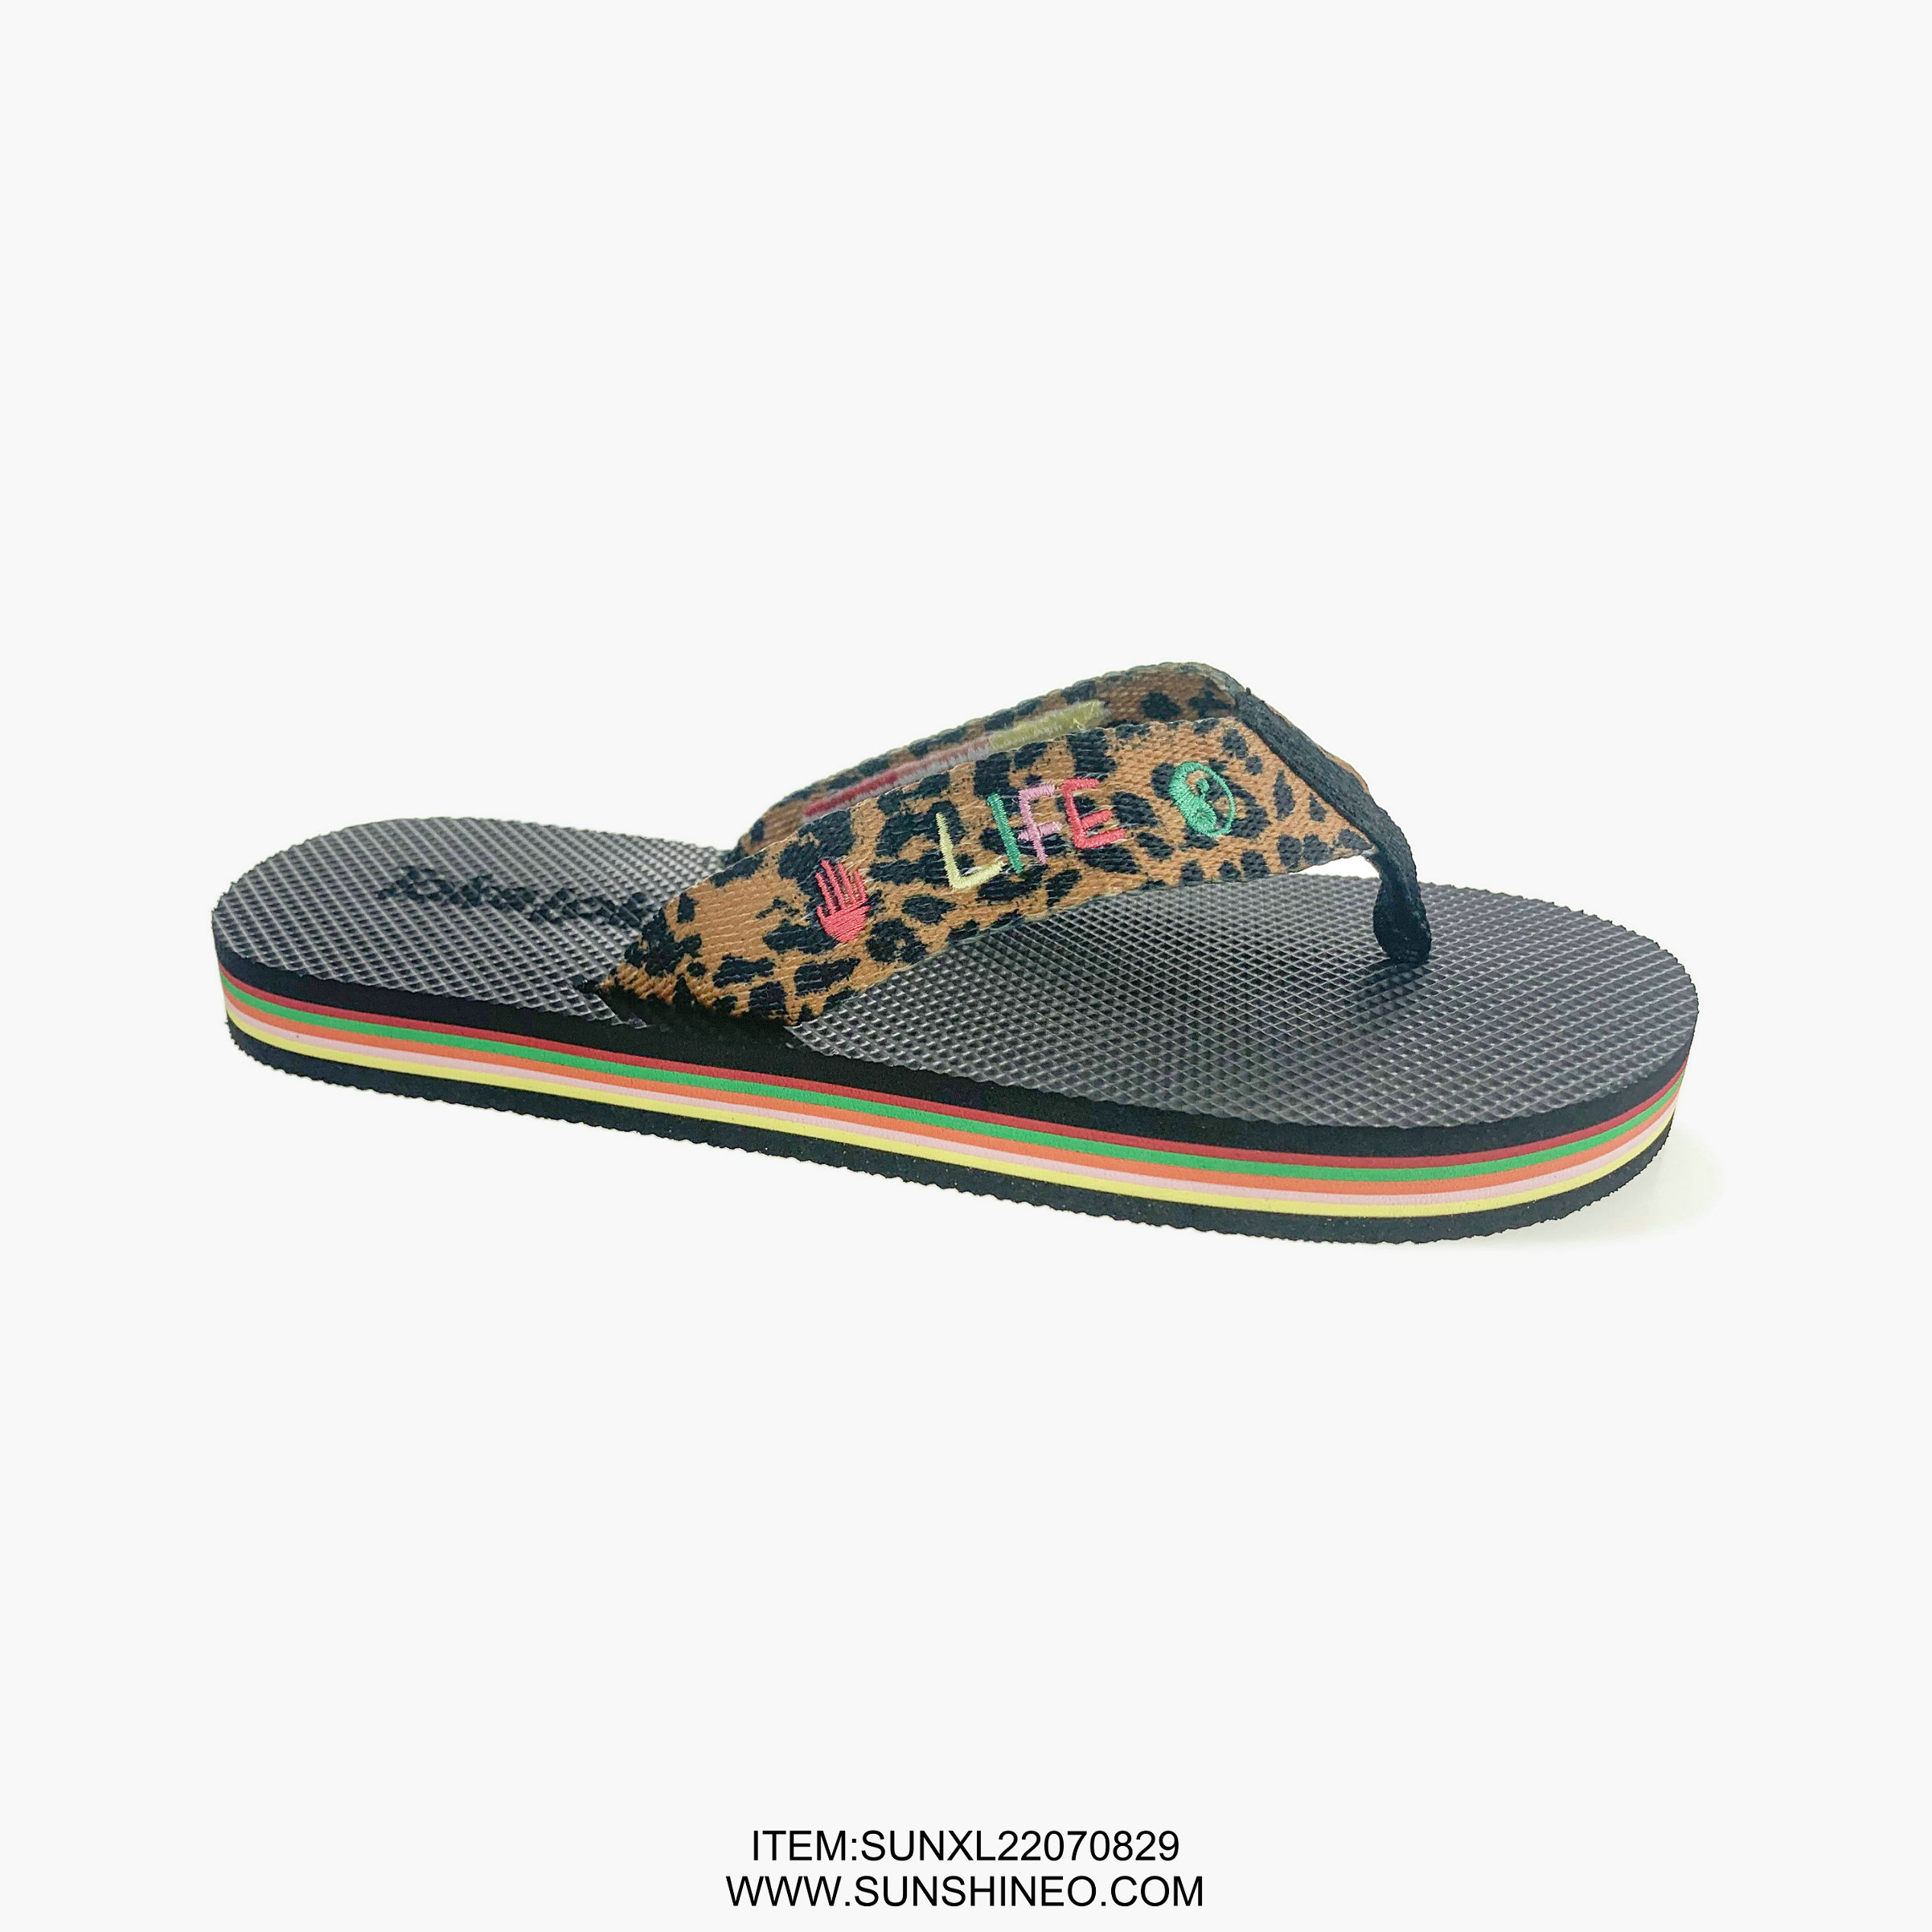 SUNXL22070829 flip flop sandals